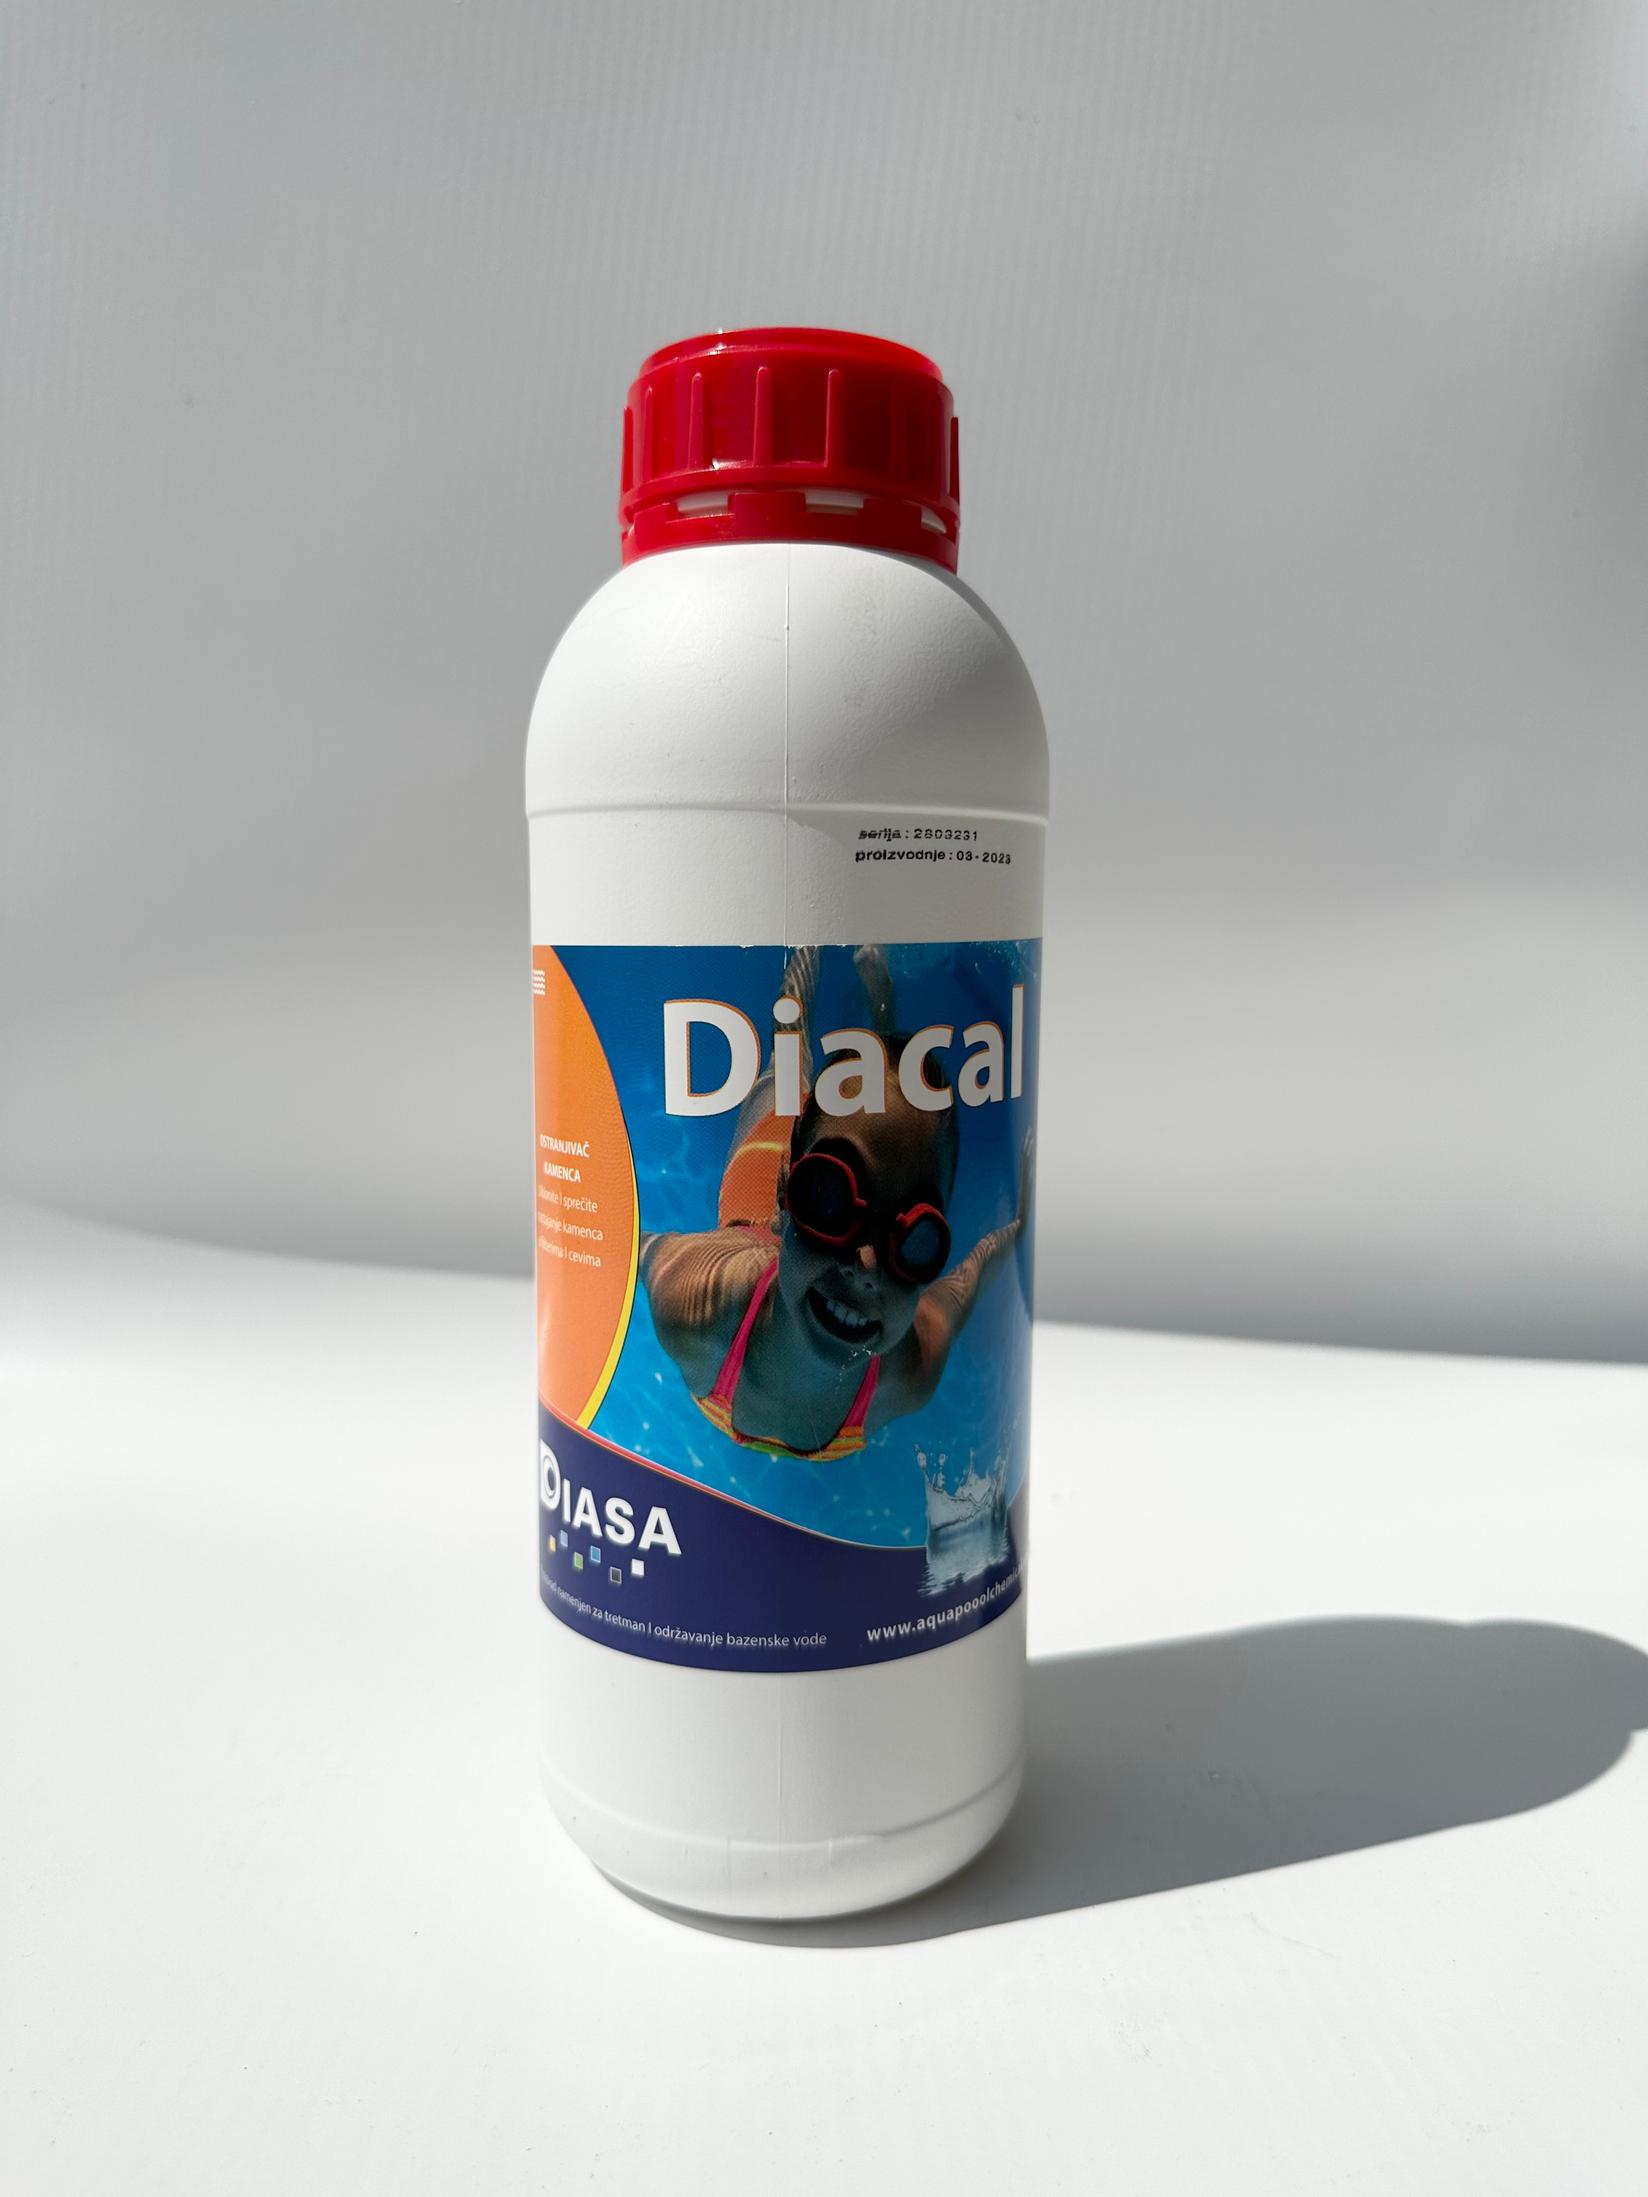 Selected image for Diasa Diacal Odstranjivač kamenca, 1L